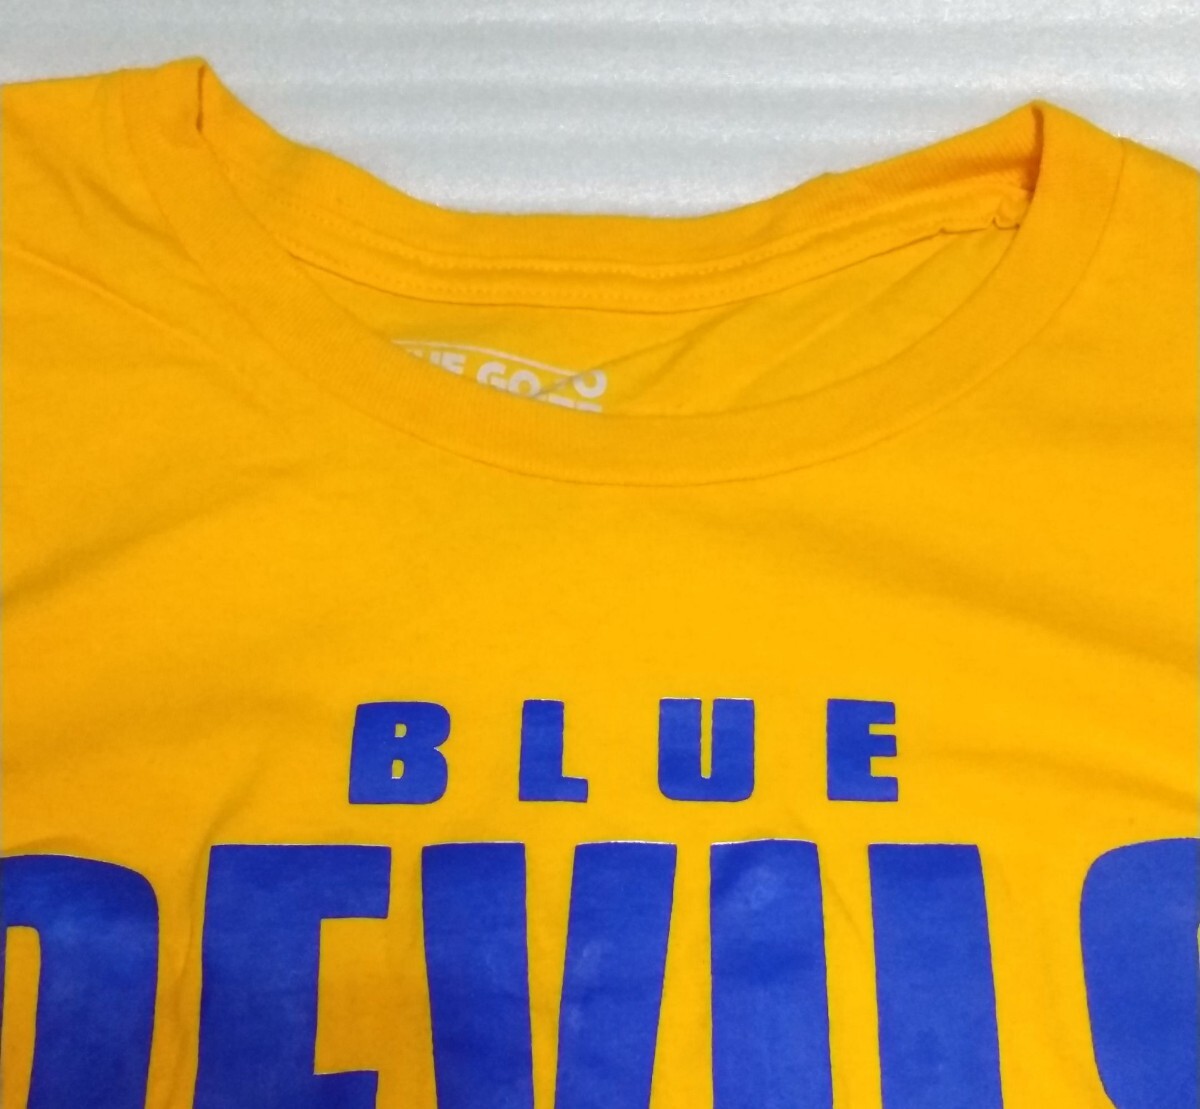 ☆adidas.com アディダス 半袖Tシャツ THE GO-TO TEE サイズL スポーツ ウェア ティーBLUE DEVILS BASKETBALLブルー青イエロー黄色(山吹)黒_首の部分です。